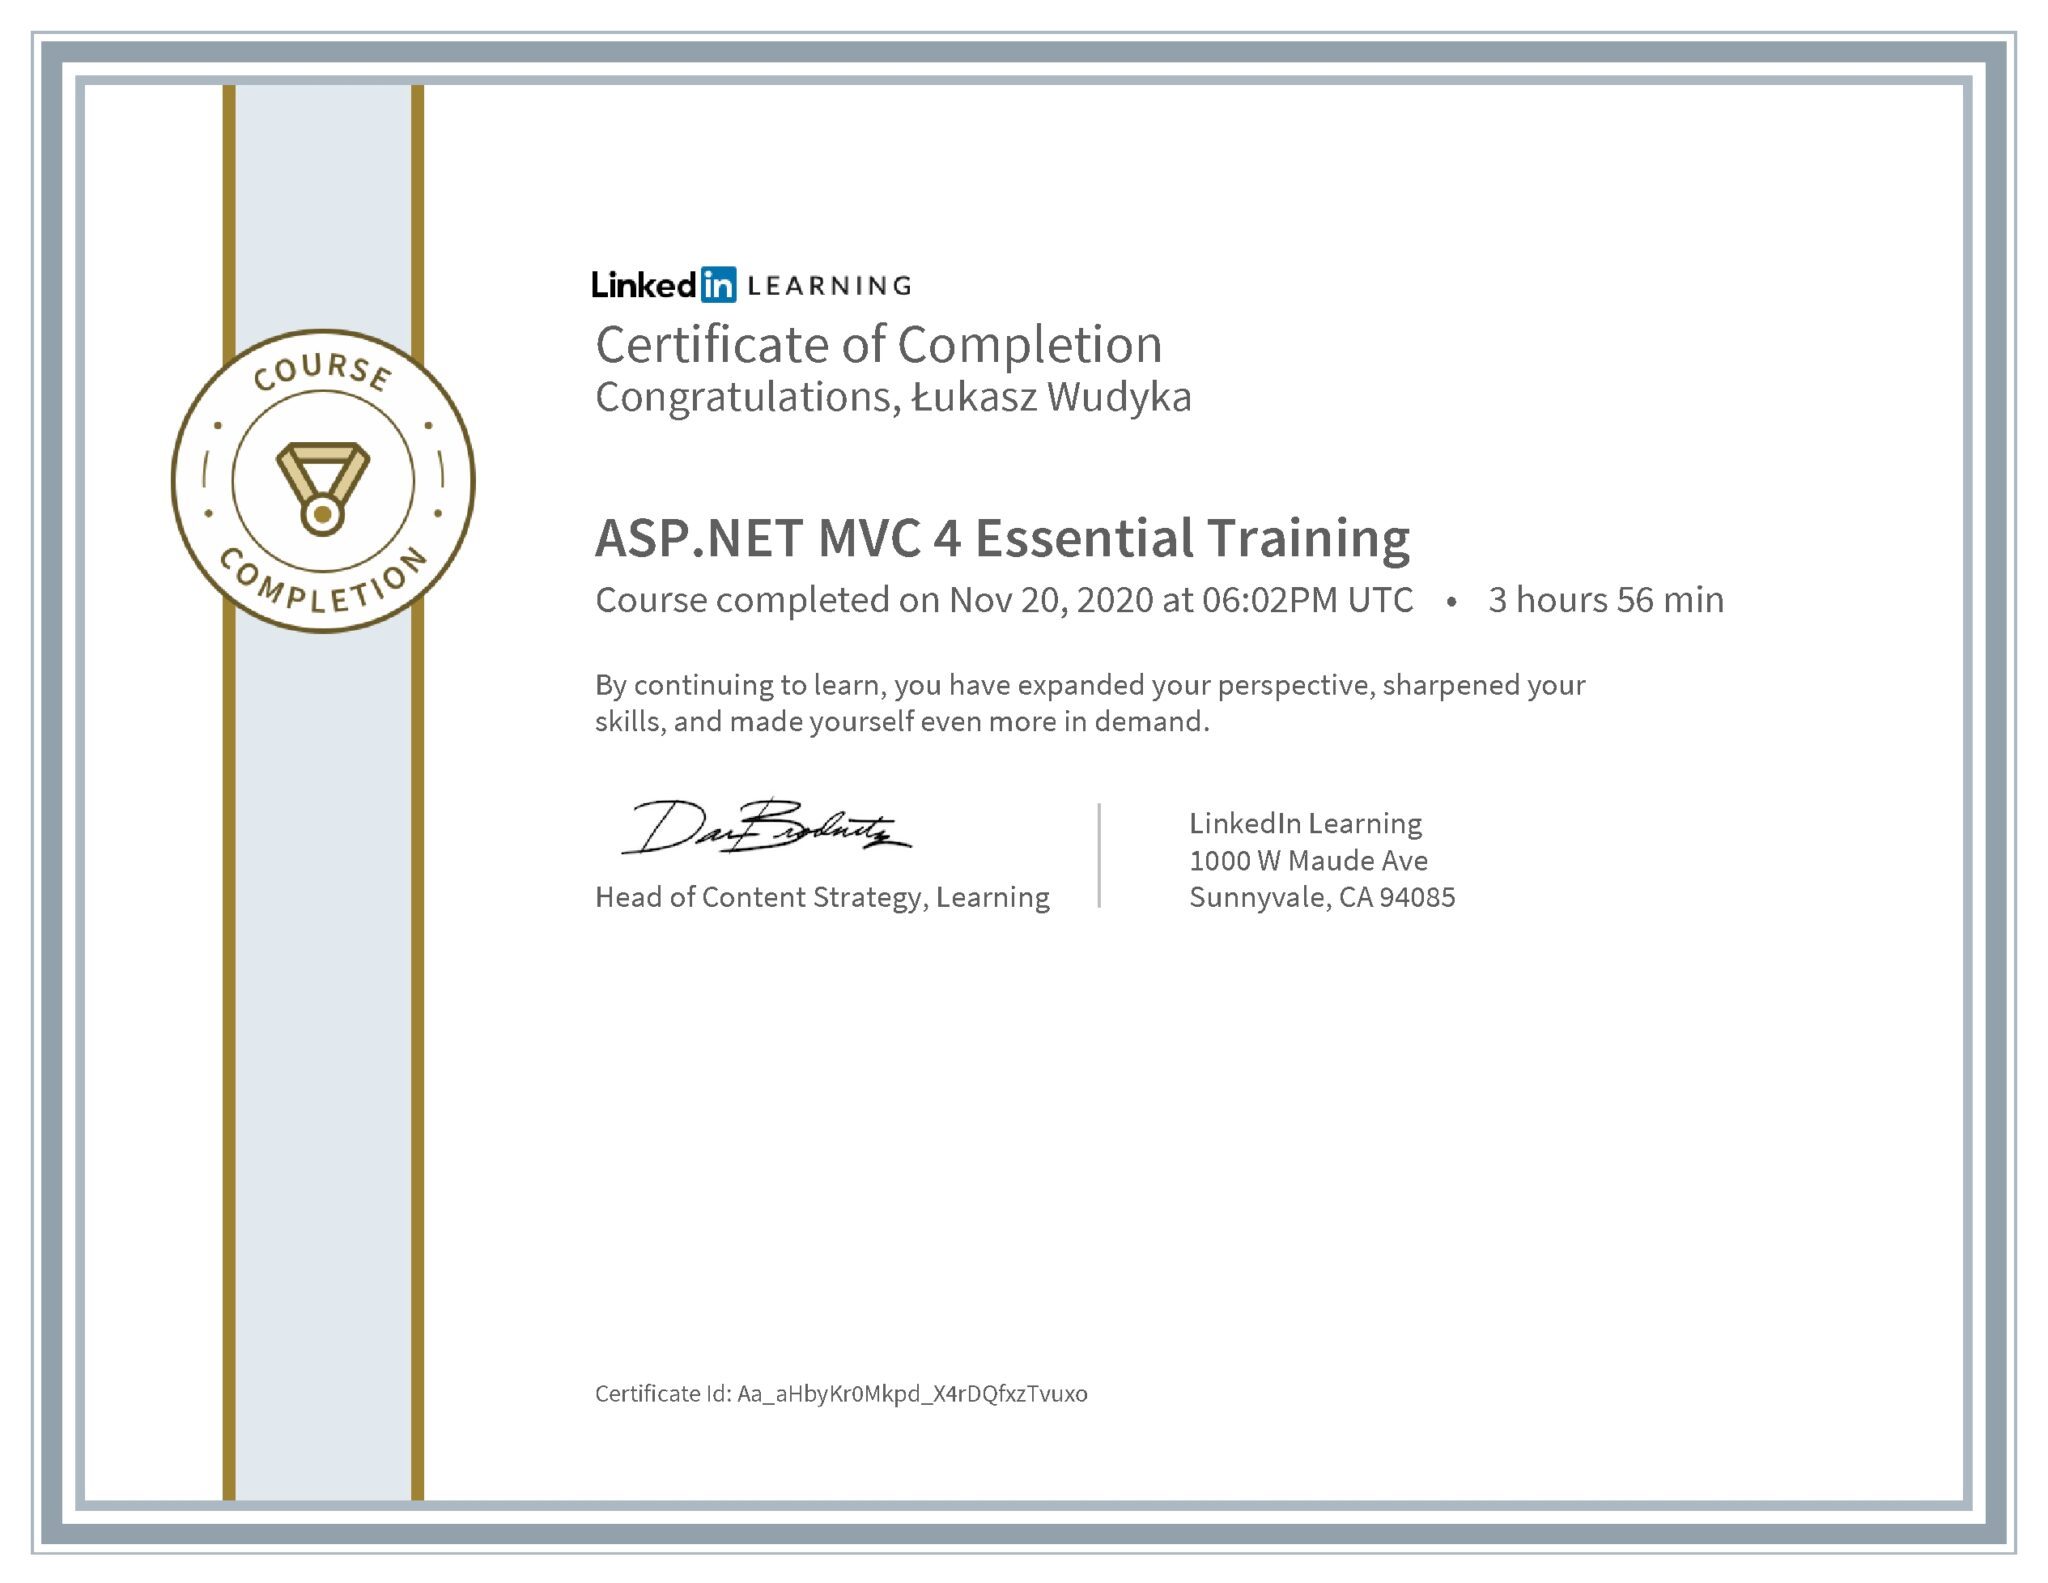 Łukasz Wudyka certyfikat LinkedIn ASP.NET MVC 4 Essential Training